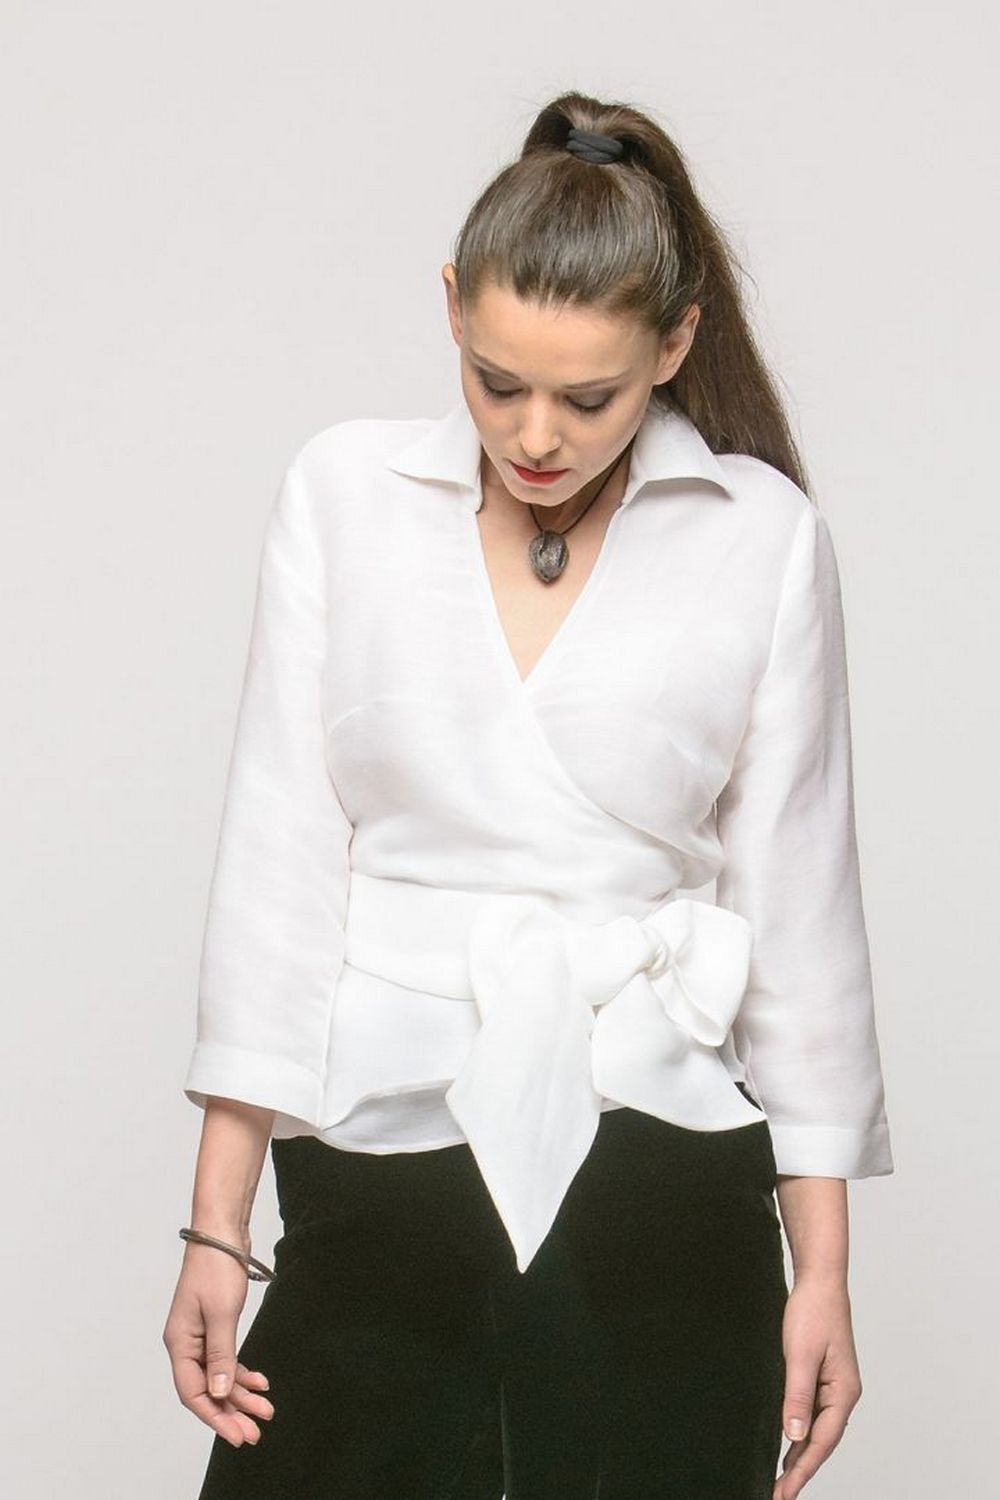 Buy Elegant silk white women`s blouse, Long sleeve V neck office casual blouse